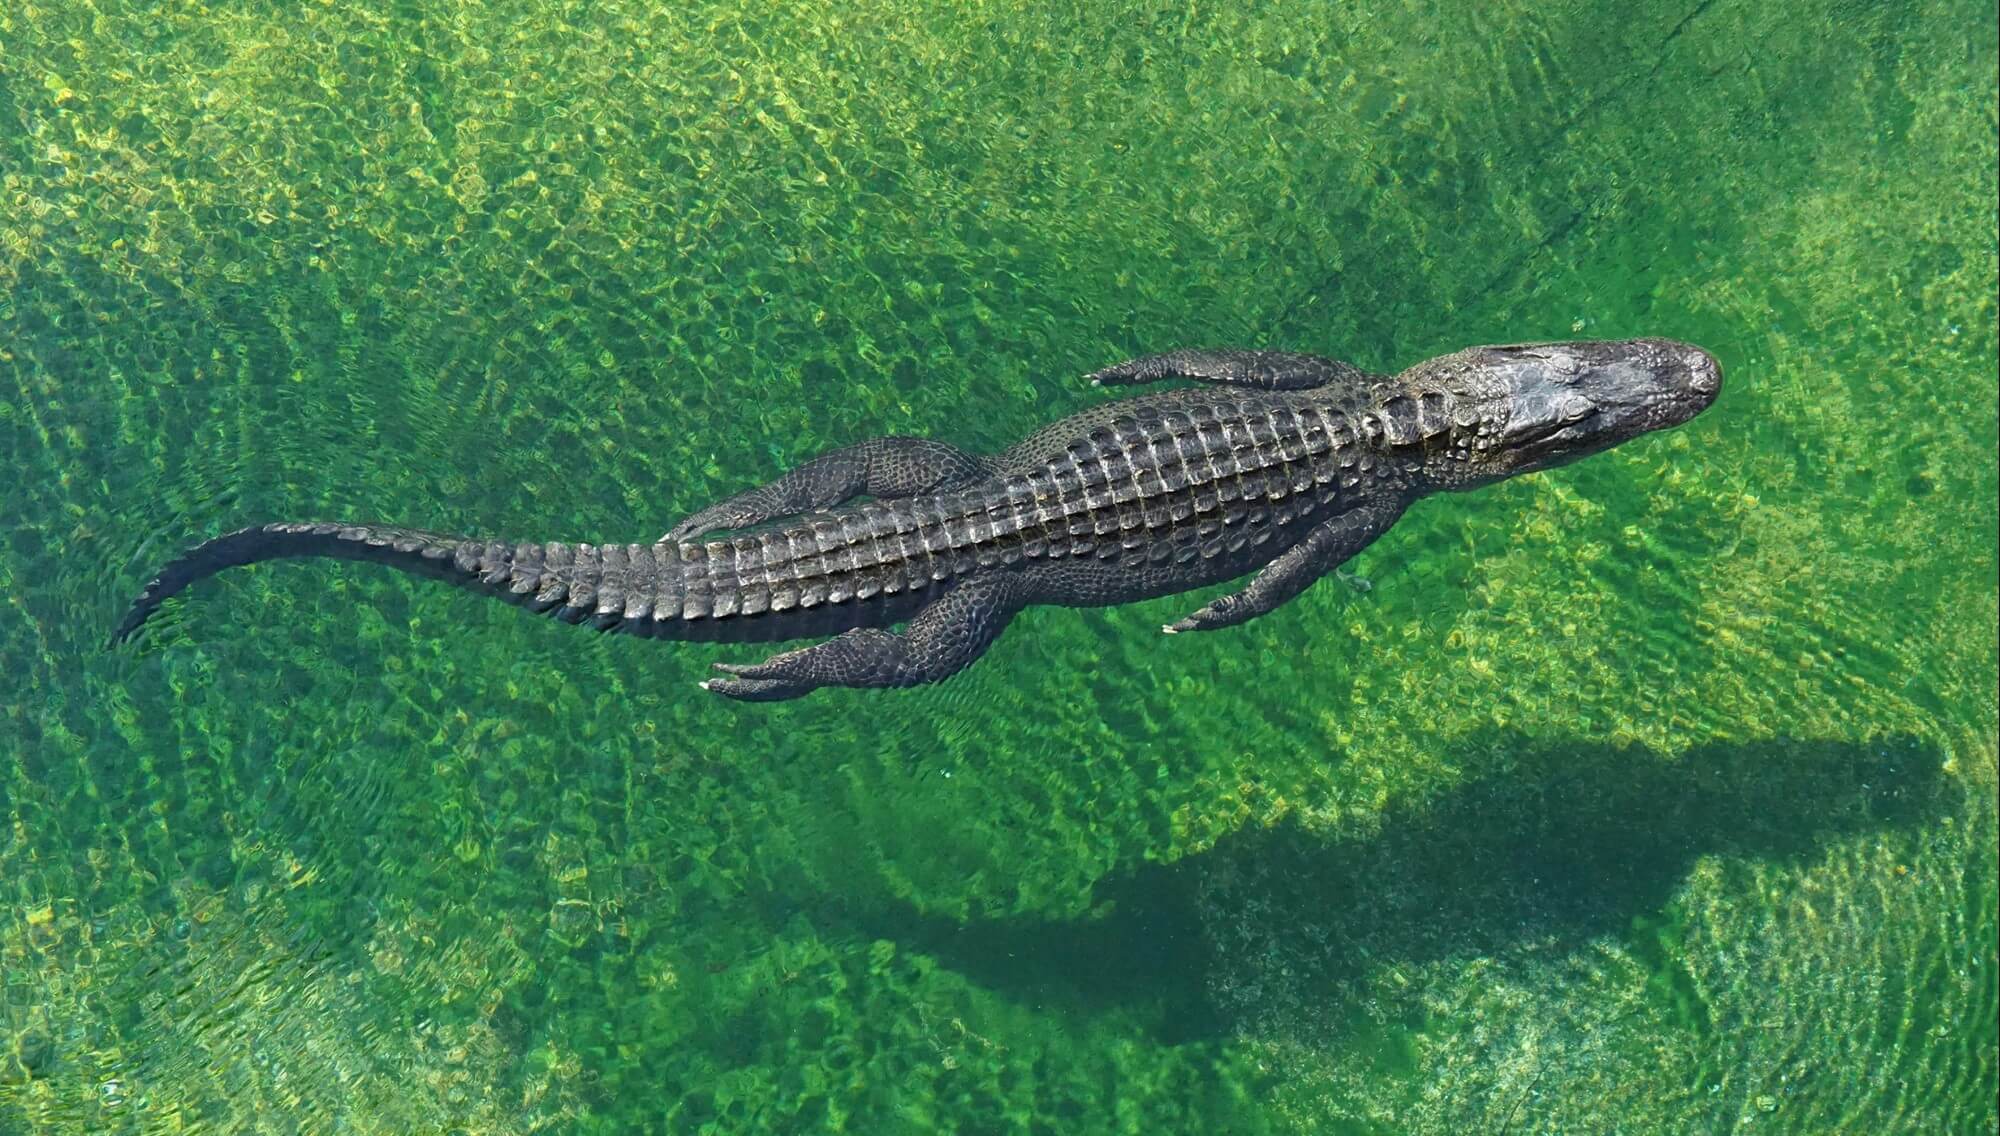 Crocodile in the green water